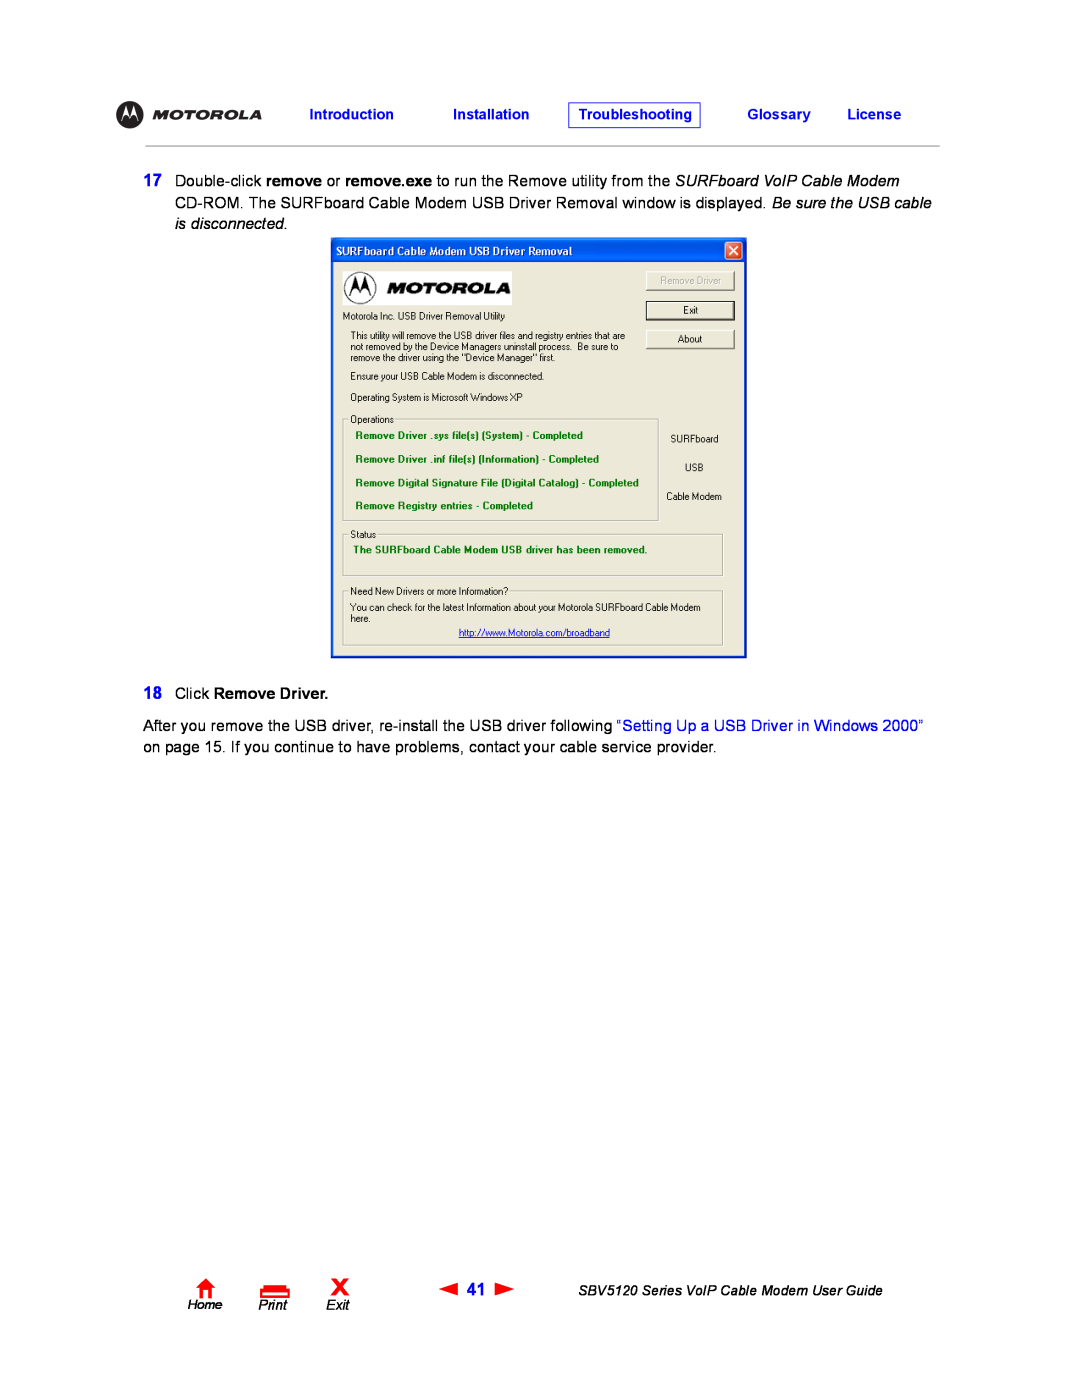 Motorola SBV5120 manual Click Remove Driver 